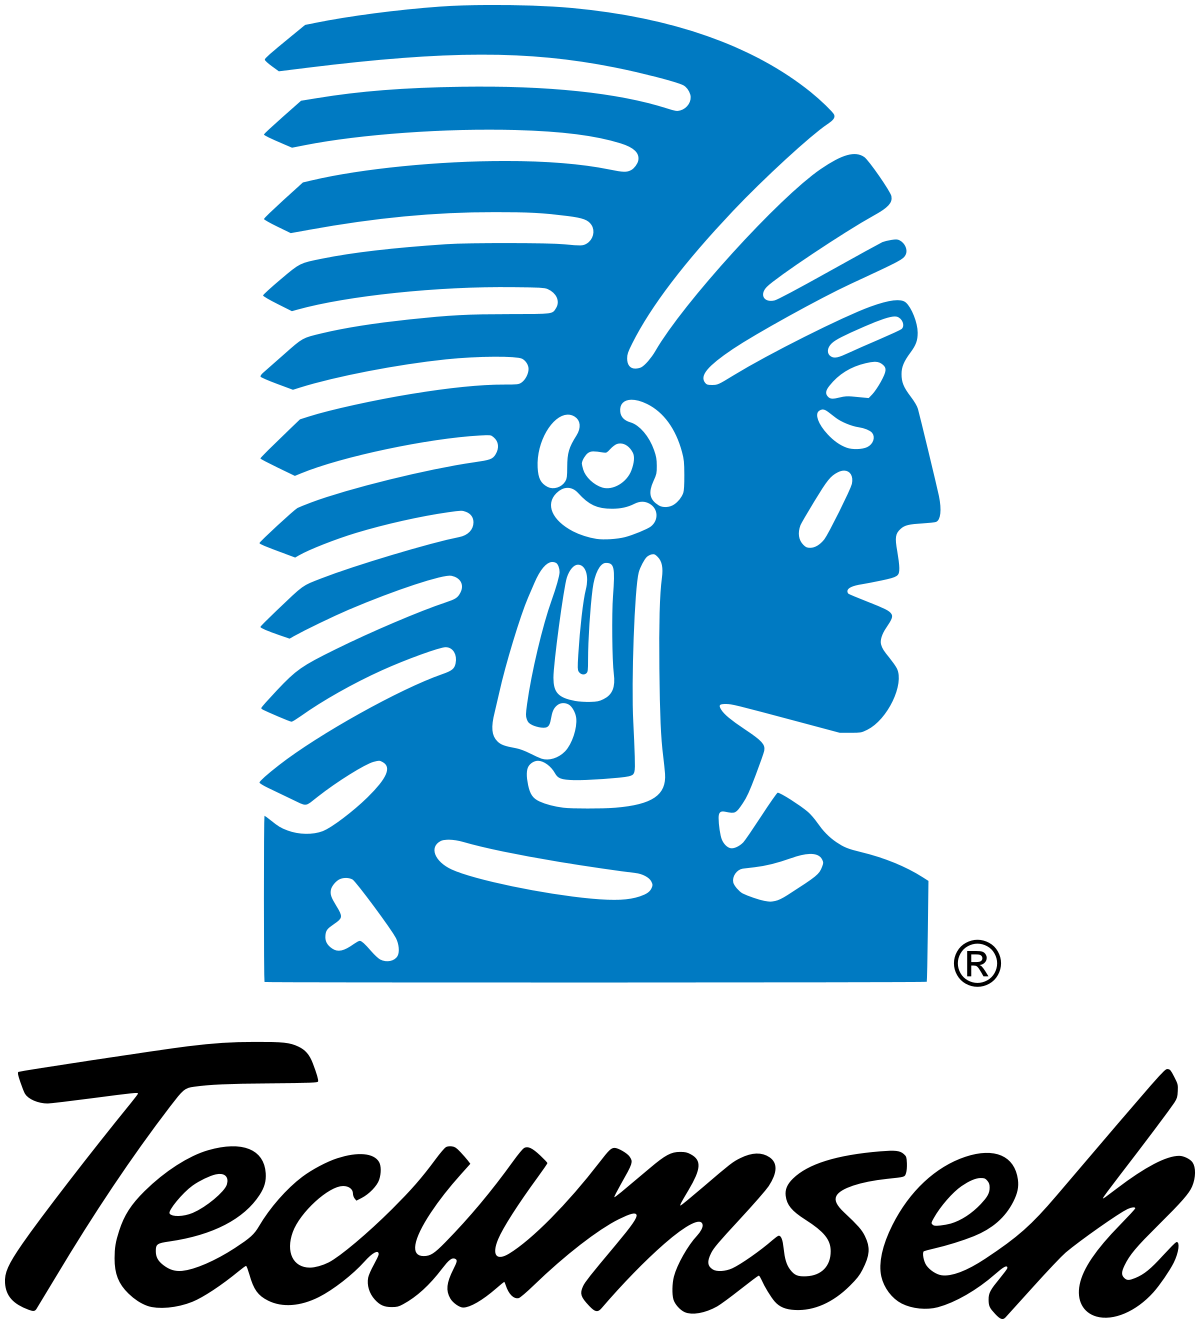 Image of Tecumseh logo